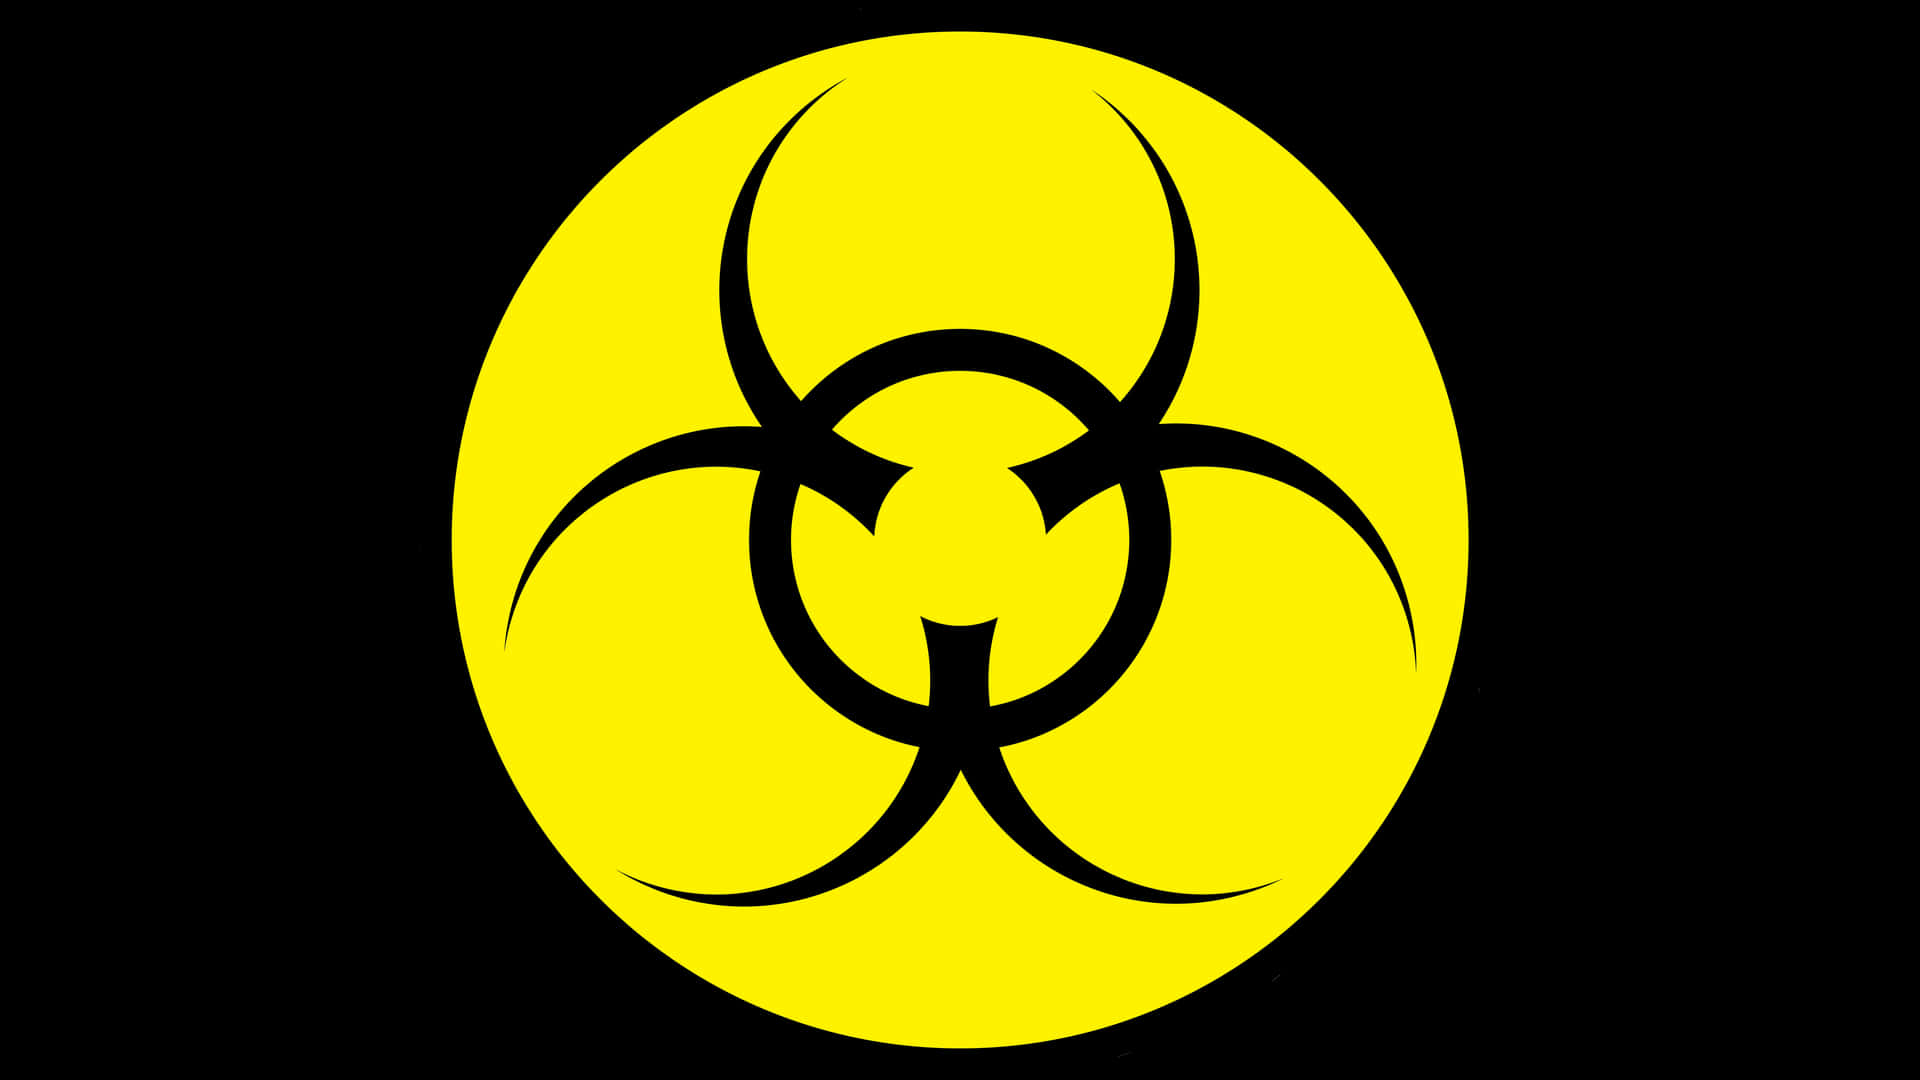 Rundgiftig Biohazard-symbol. Wallpaper